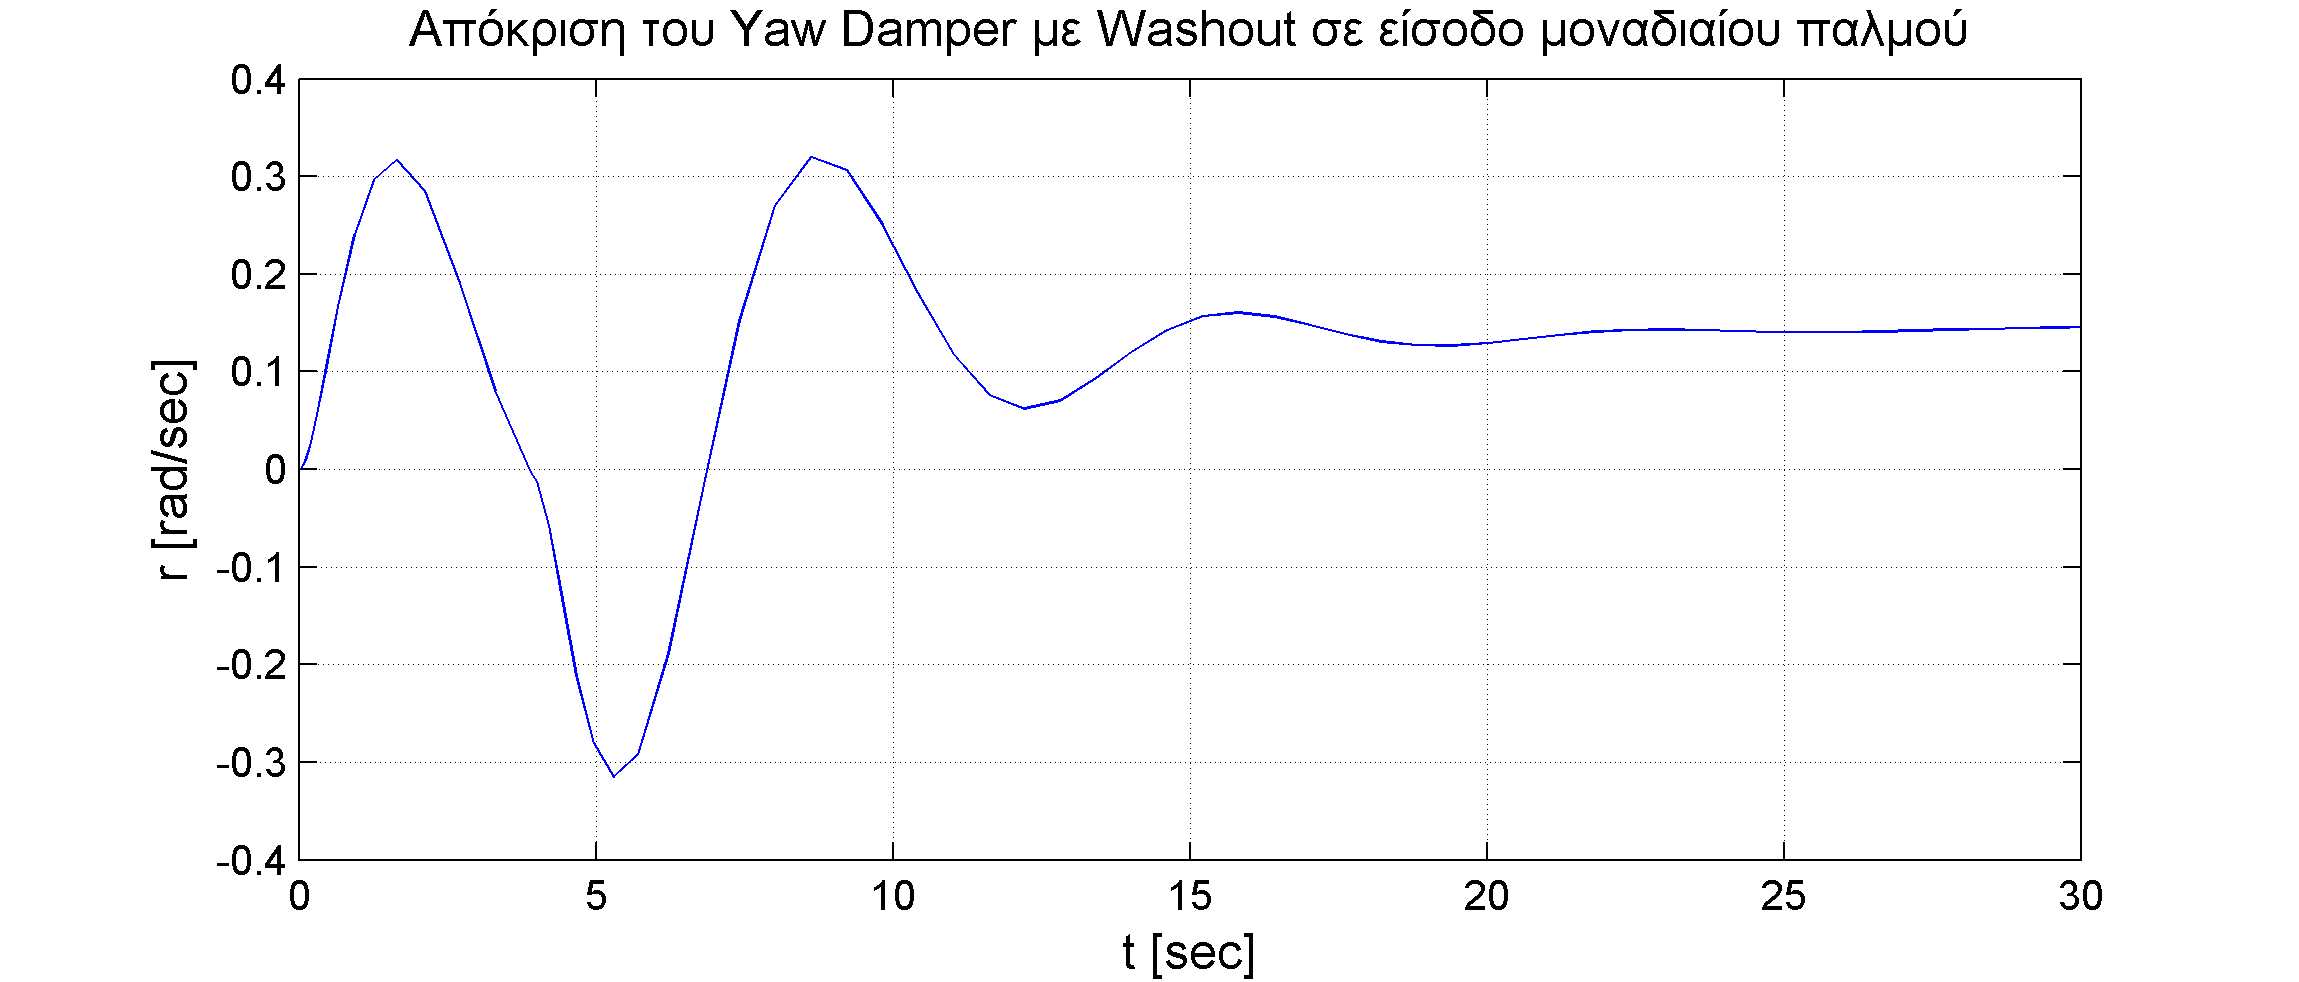 Η εικόνα δεν εμφανίζεται/Image is not displayed - Απόκριση ρυθμού εκτροπής με την εισαγωγή του κυκλώματος Washout στο SAS απόσβεσης της εκτροπής με ανάδραση του r / r response, yaw damper, rudder pulse input, washout